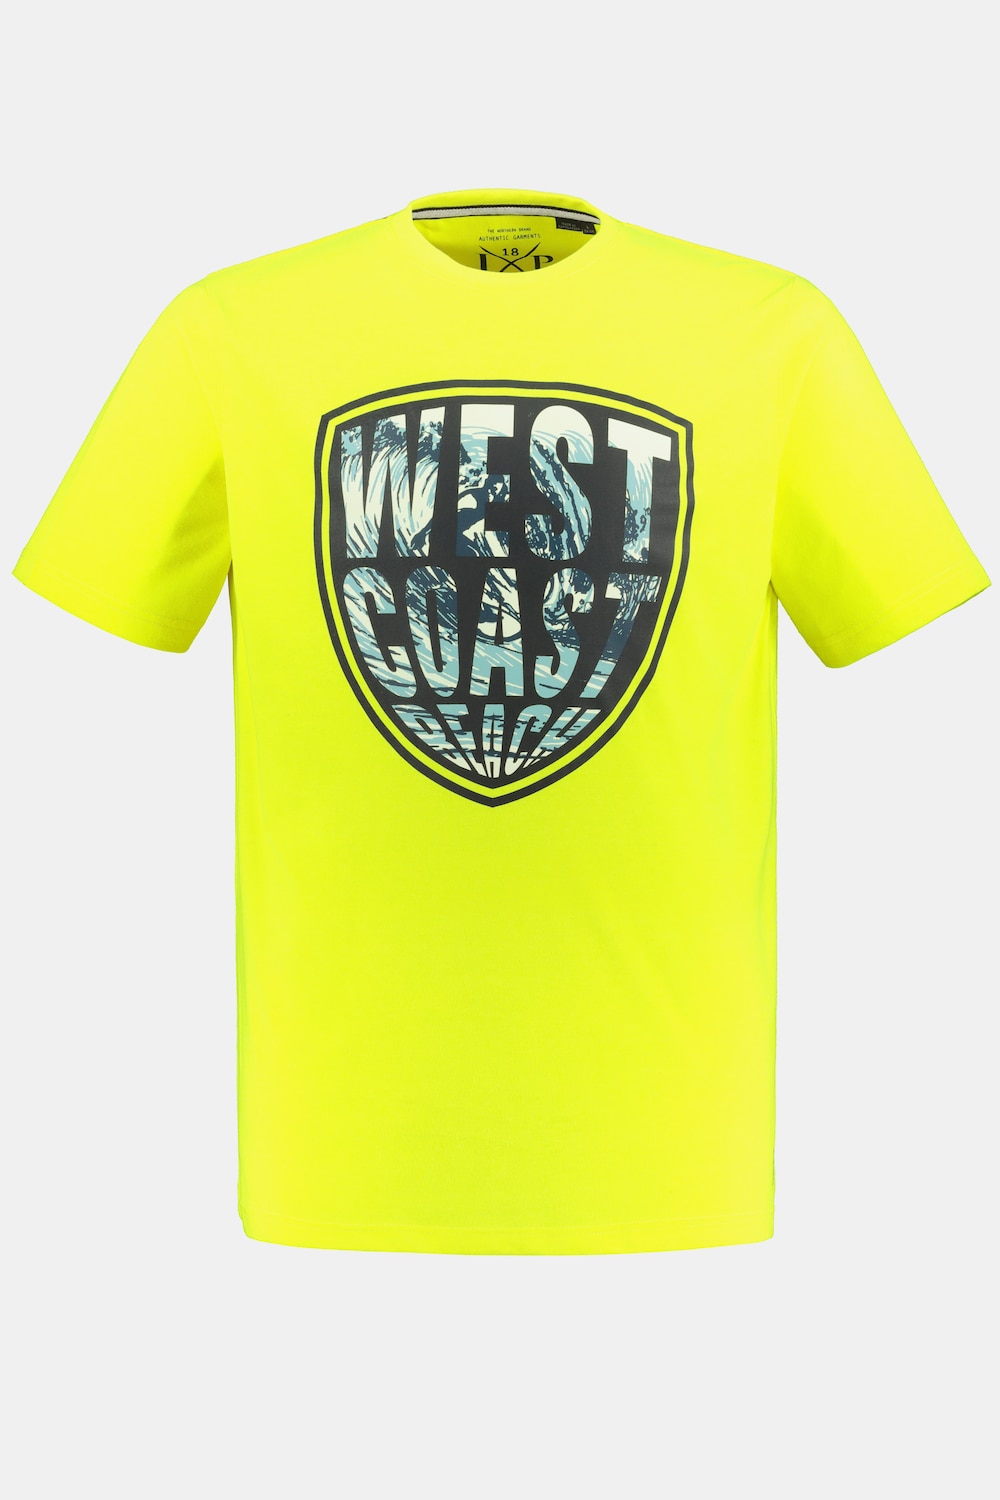 T-Shirt, Große Größen, Herren, gelb, Größe: XXL, Polyester/Baumwolle, JP1880